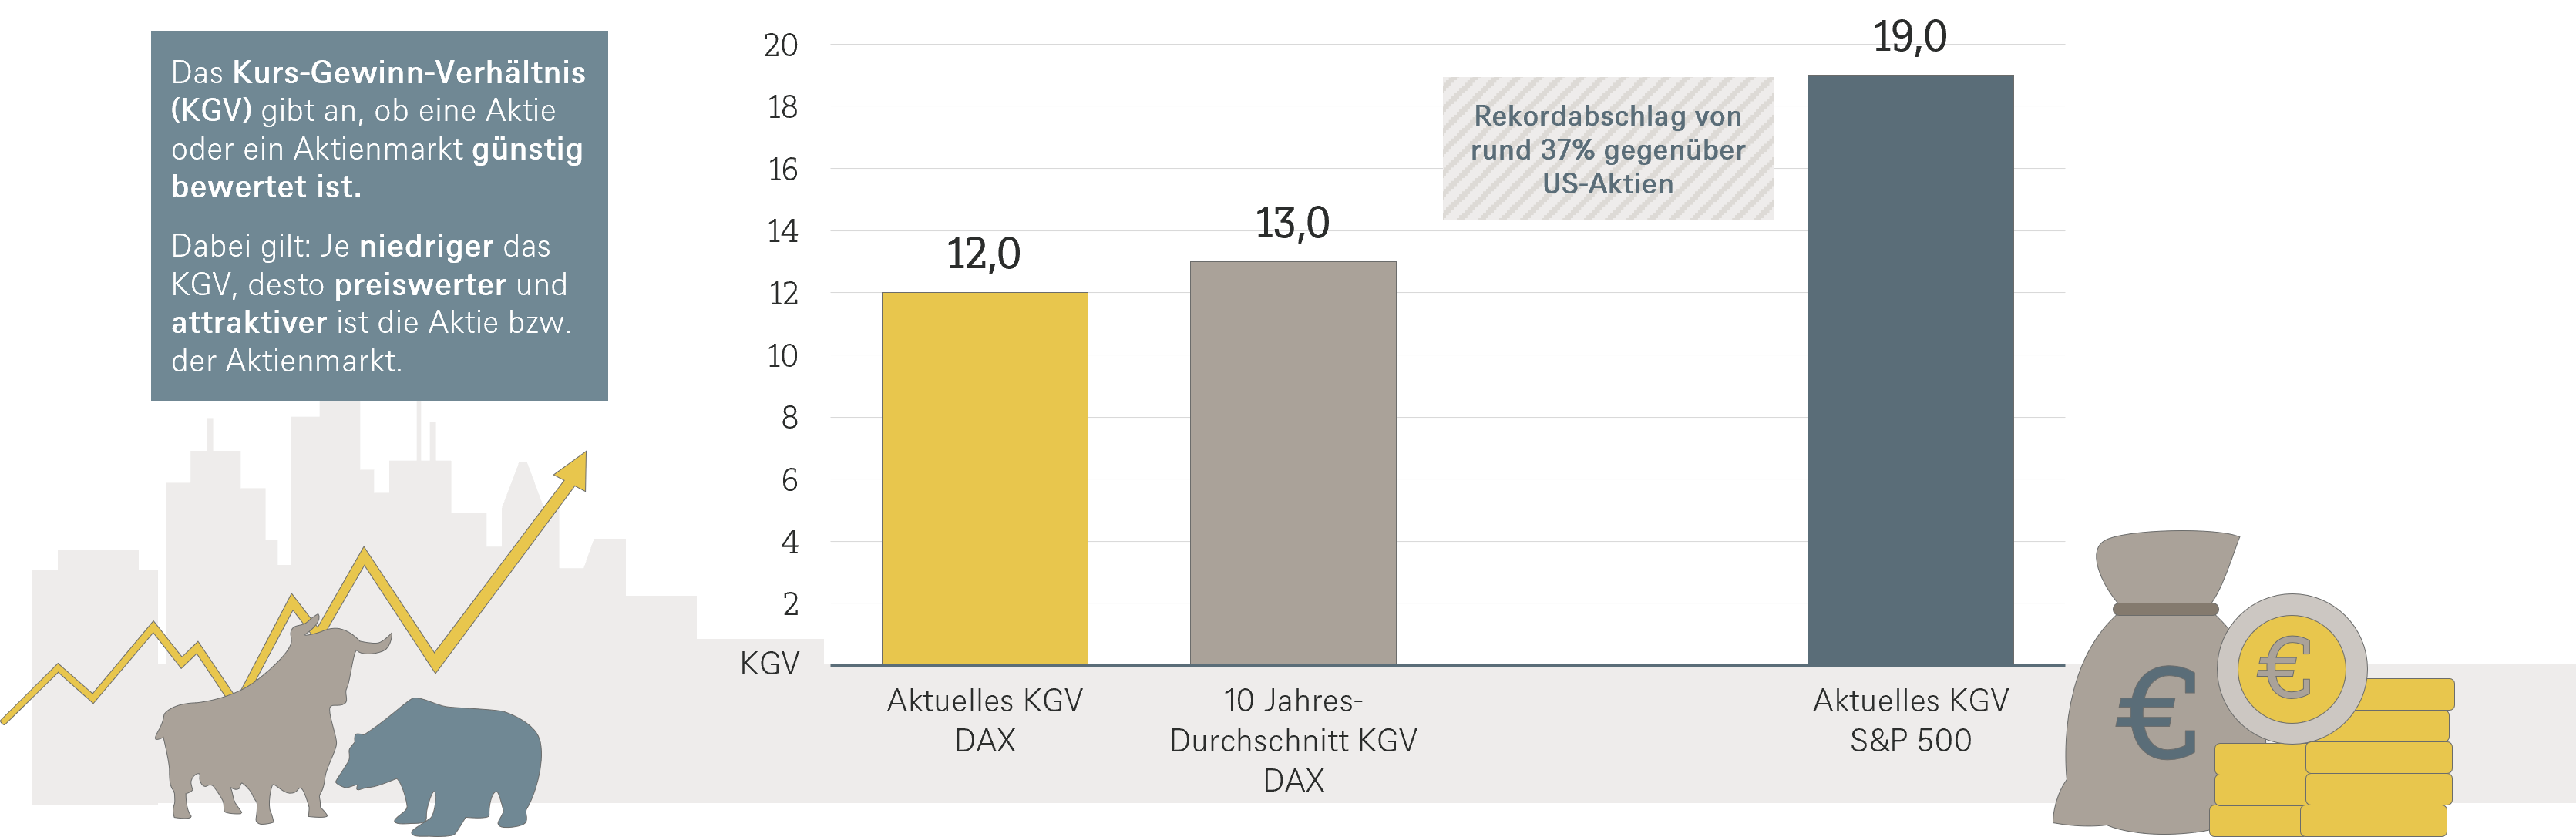 Bewertung deutscher Aktien.png